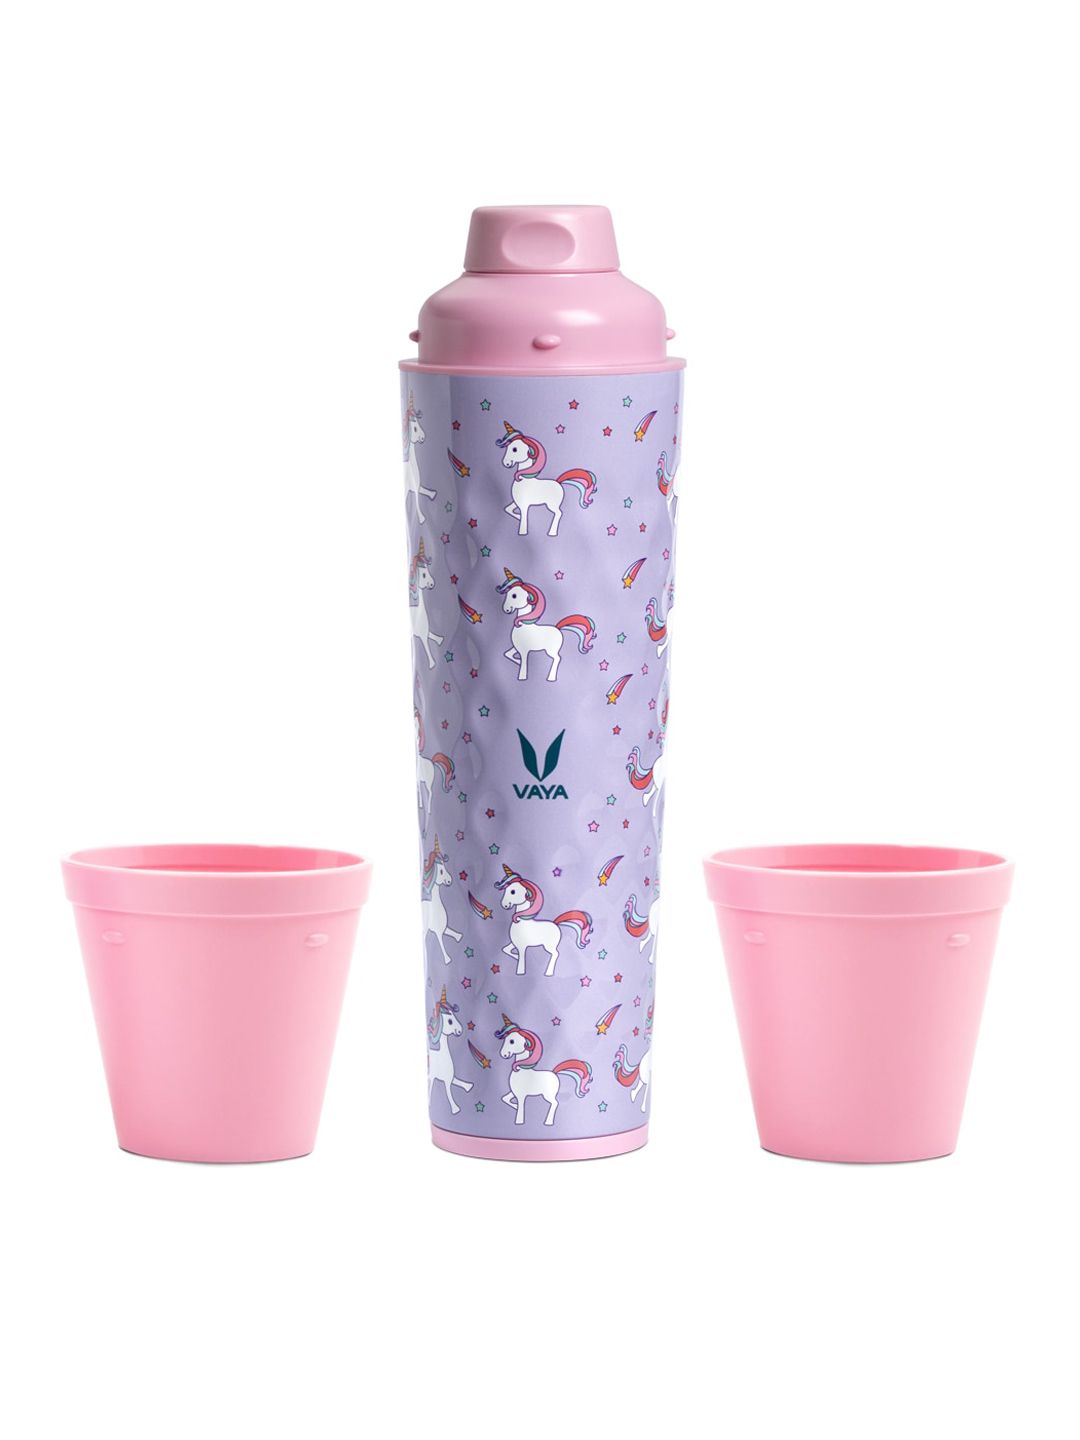 Vaya Lavender & Pink Printed Stainless Steel Water Bottle Price in India